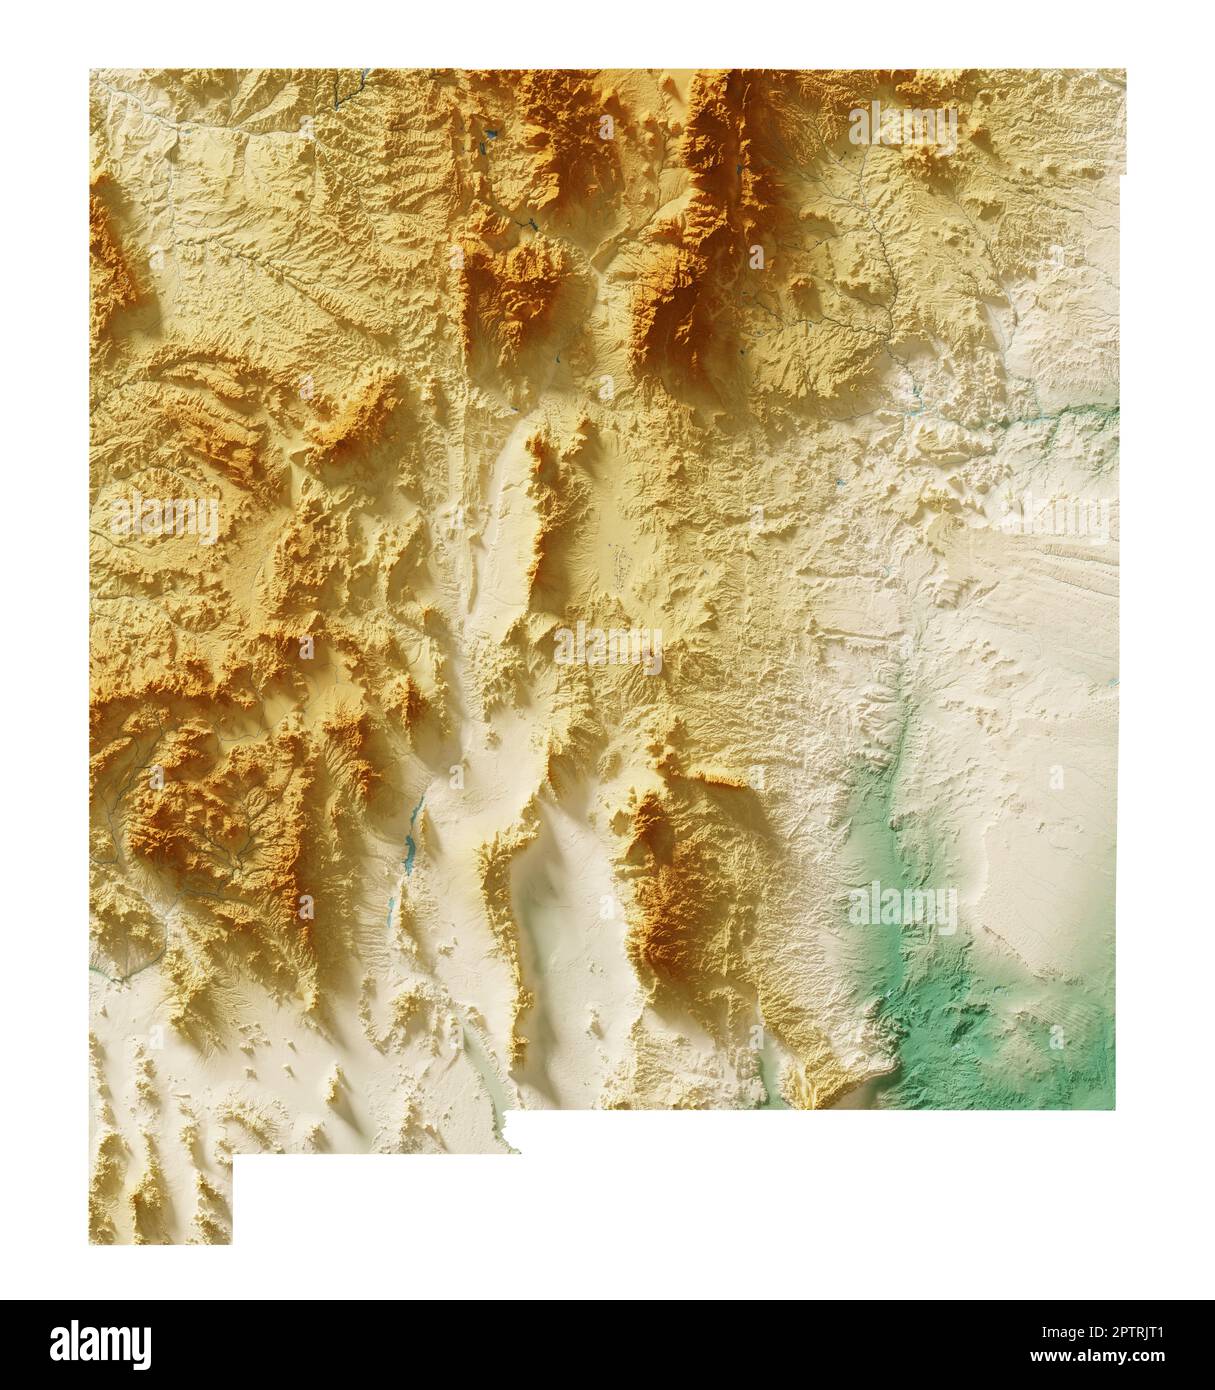 Der US-Staat New Mexico. Sehr detailliertes 3D-Rendering einer schattierten Reliefkarte mit Wasserkörpern. Farbig nach Höhe. Erstellt mit Satellitendaten. Stockfoto